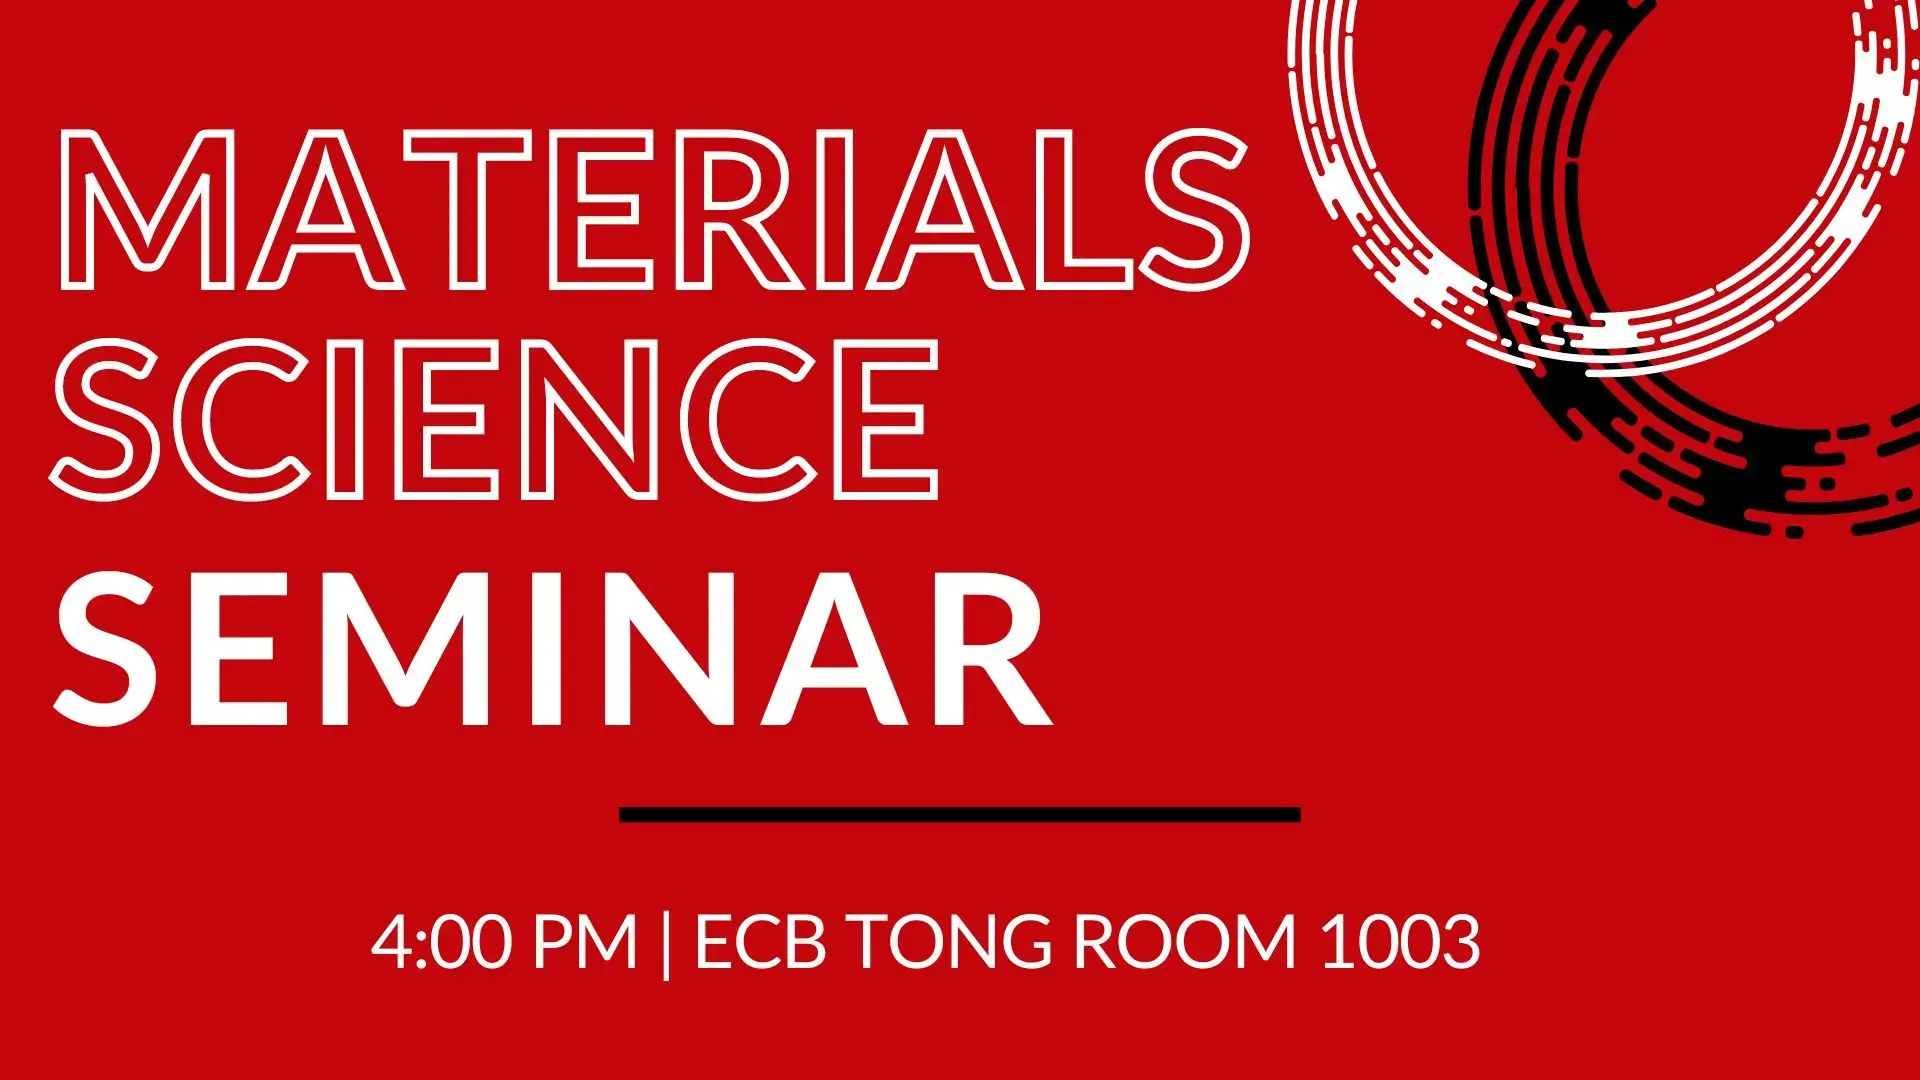 MS&E Seminar Series - Thursdays 4p - ECB Tong